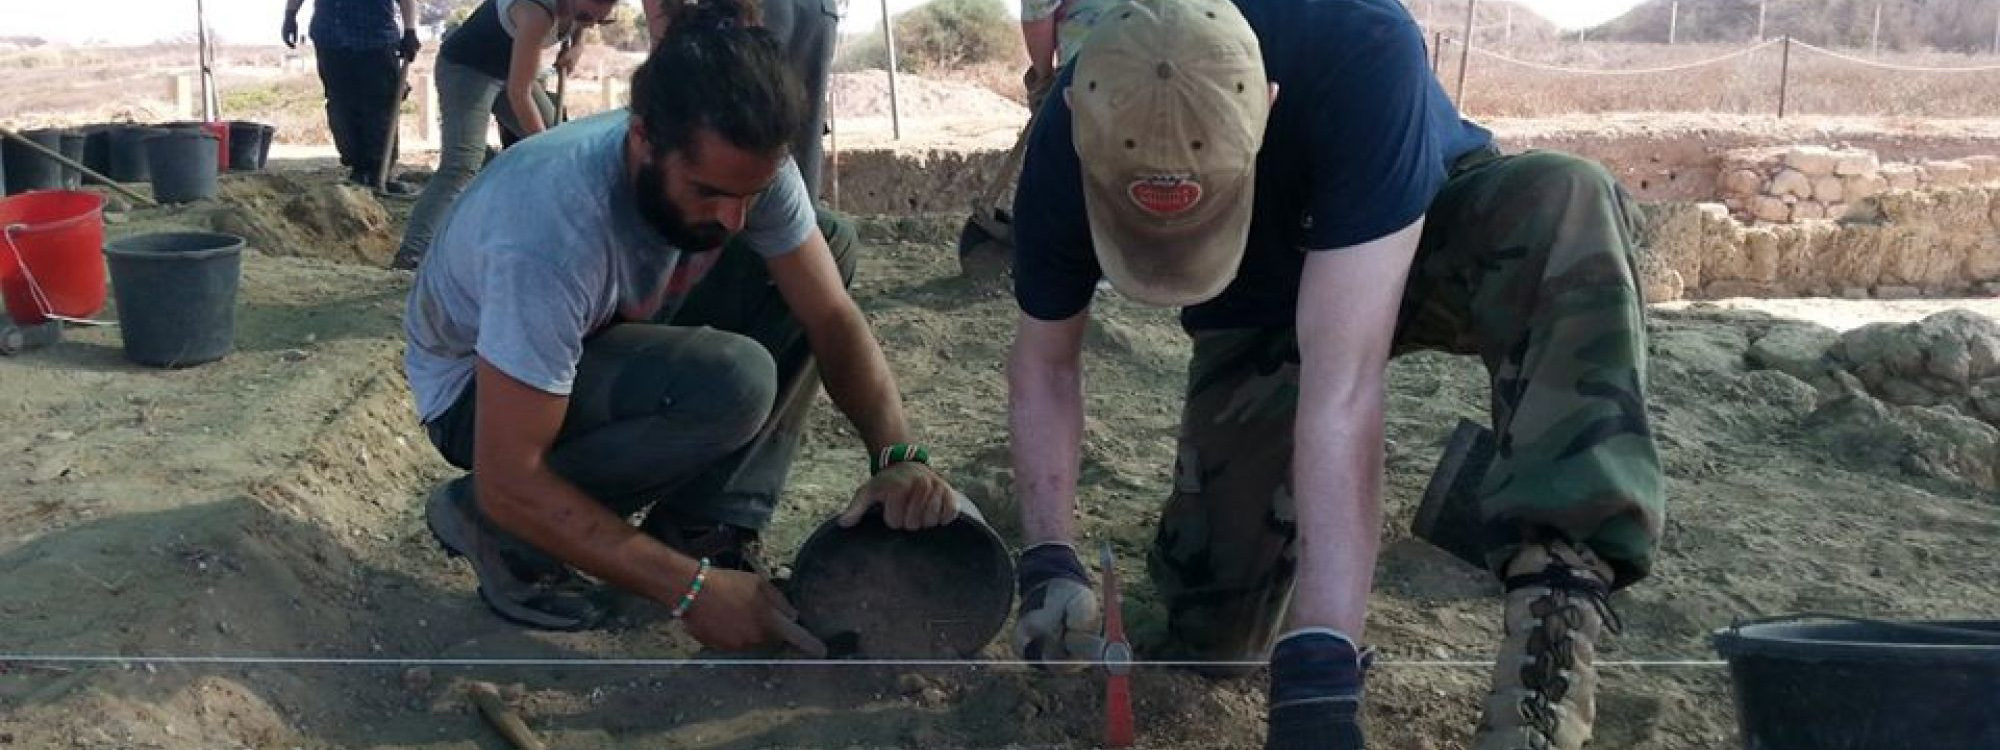 AVAR Archaeology Israel excavation